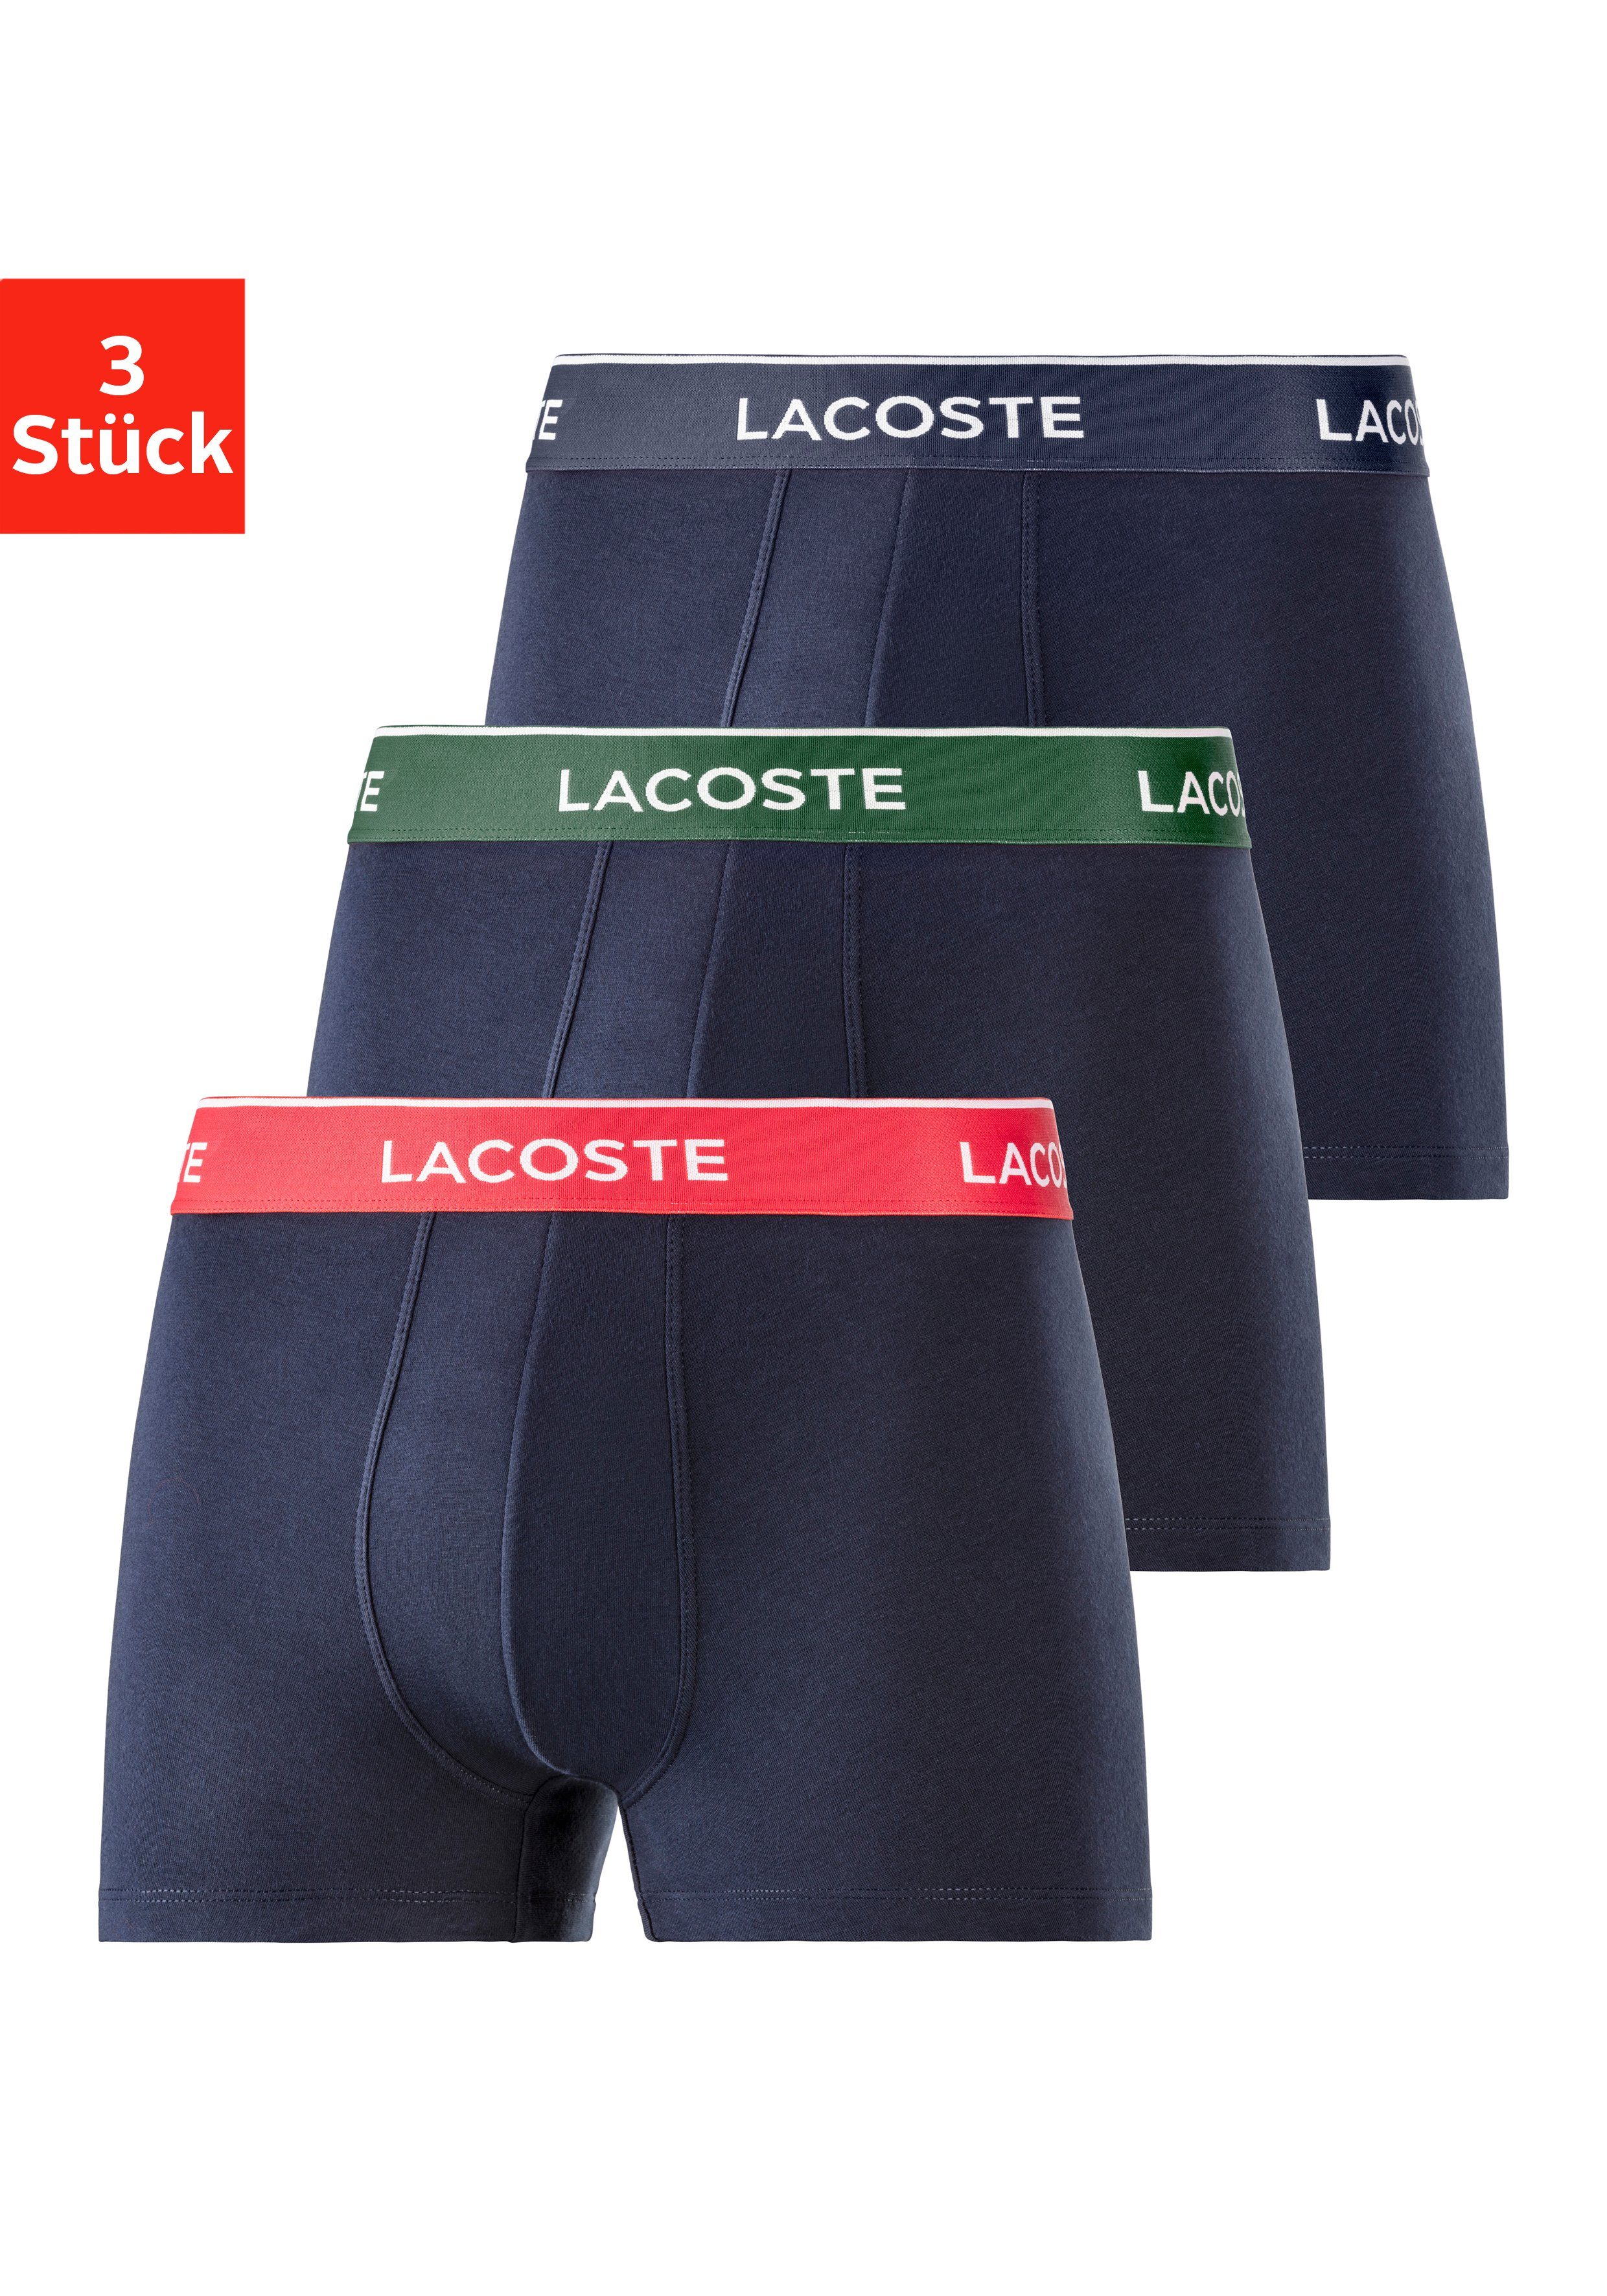 Lacoste Boxershorts Passform Komfortable Lacoste navy-grün, eng Atmungsaktives navy Herren 3-St., Boxershorts navy-rot, Material, 3er-Pack) Premium (Packung